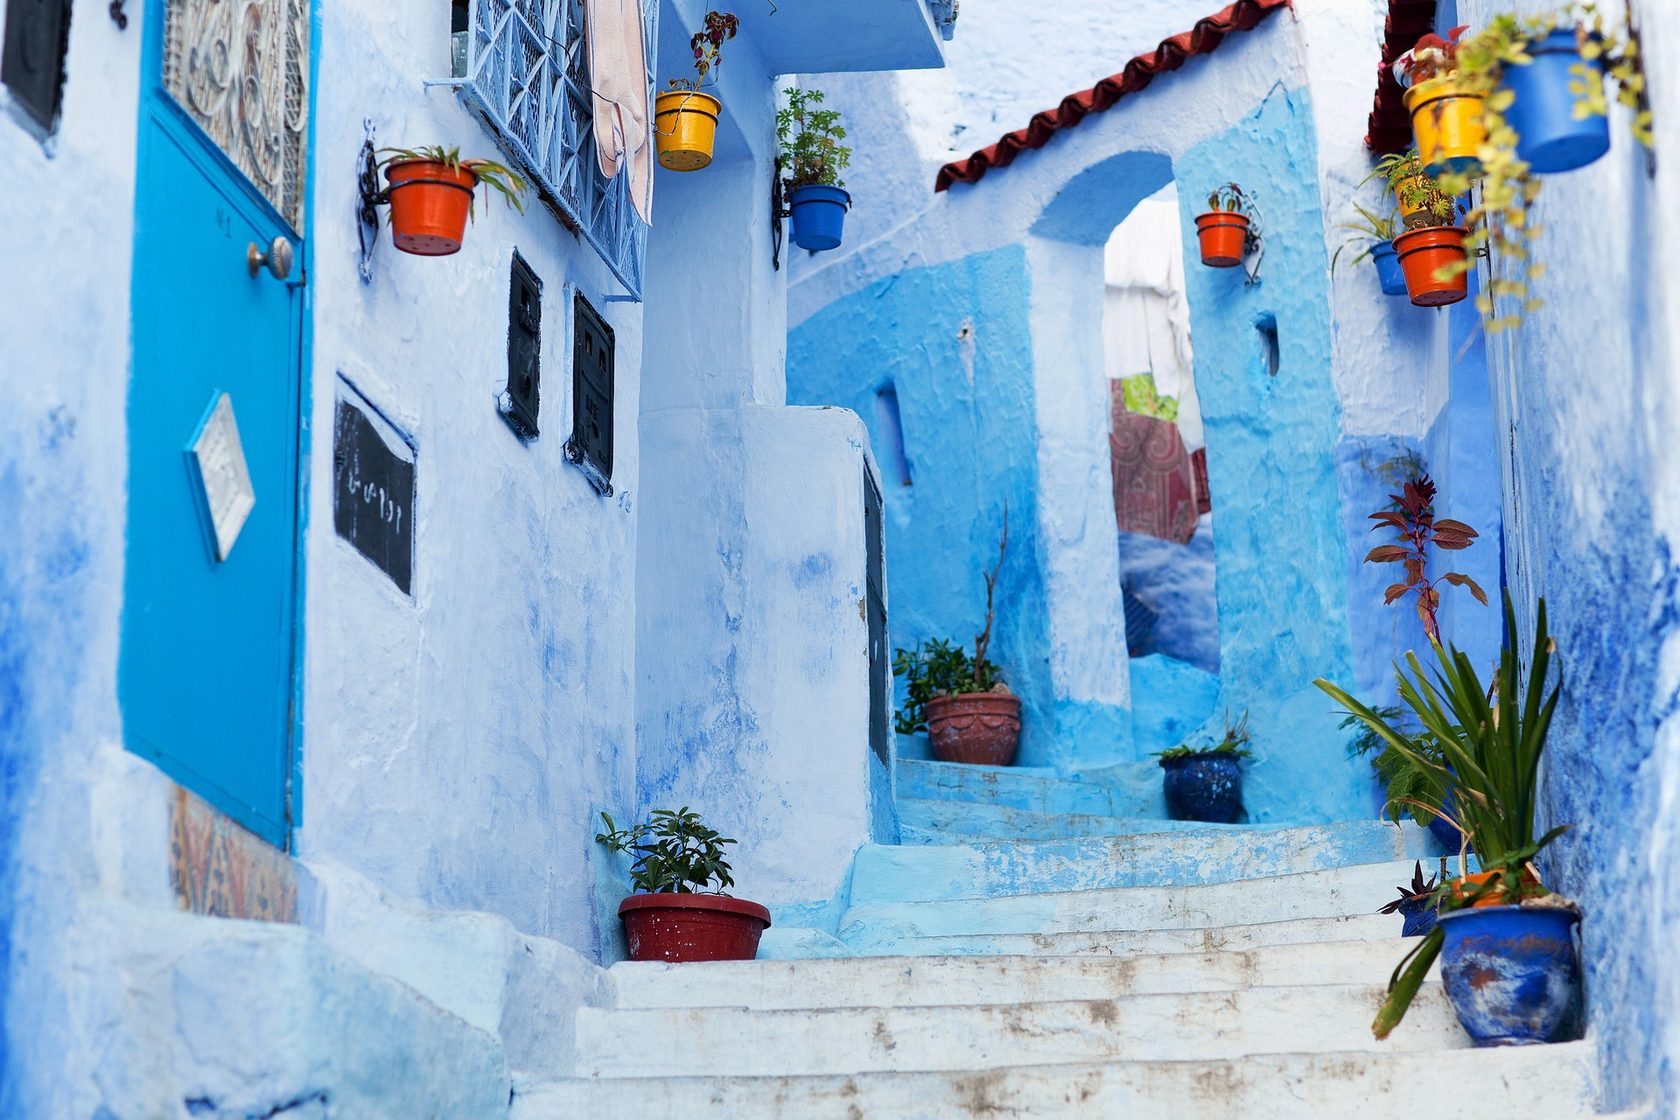 Morocco travel. Шефшауэн Марокко. Голубой город в Марокко Шефшауэн. Шефшауэн голубая Жемчужина Марокко. Синяя деревня в Марокко.